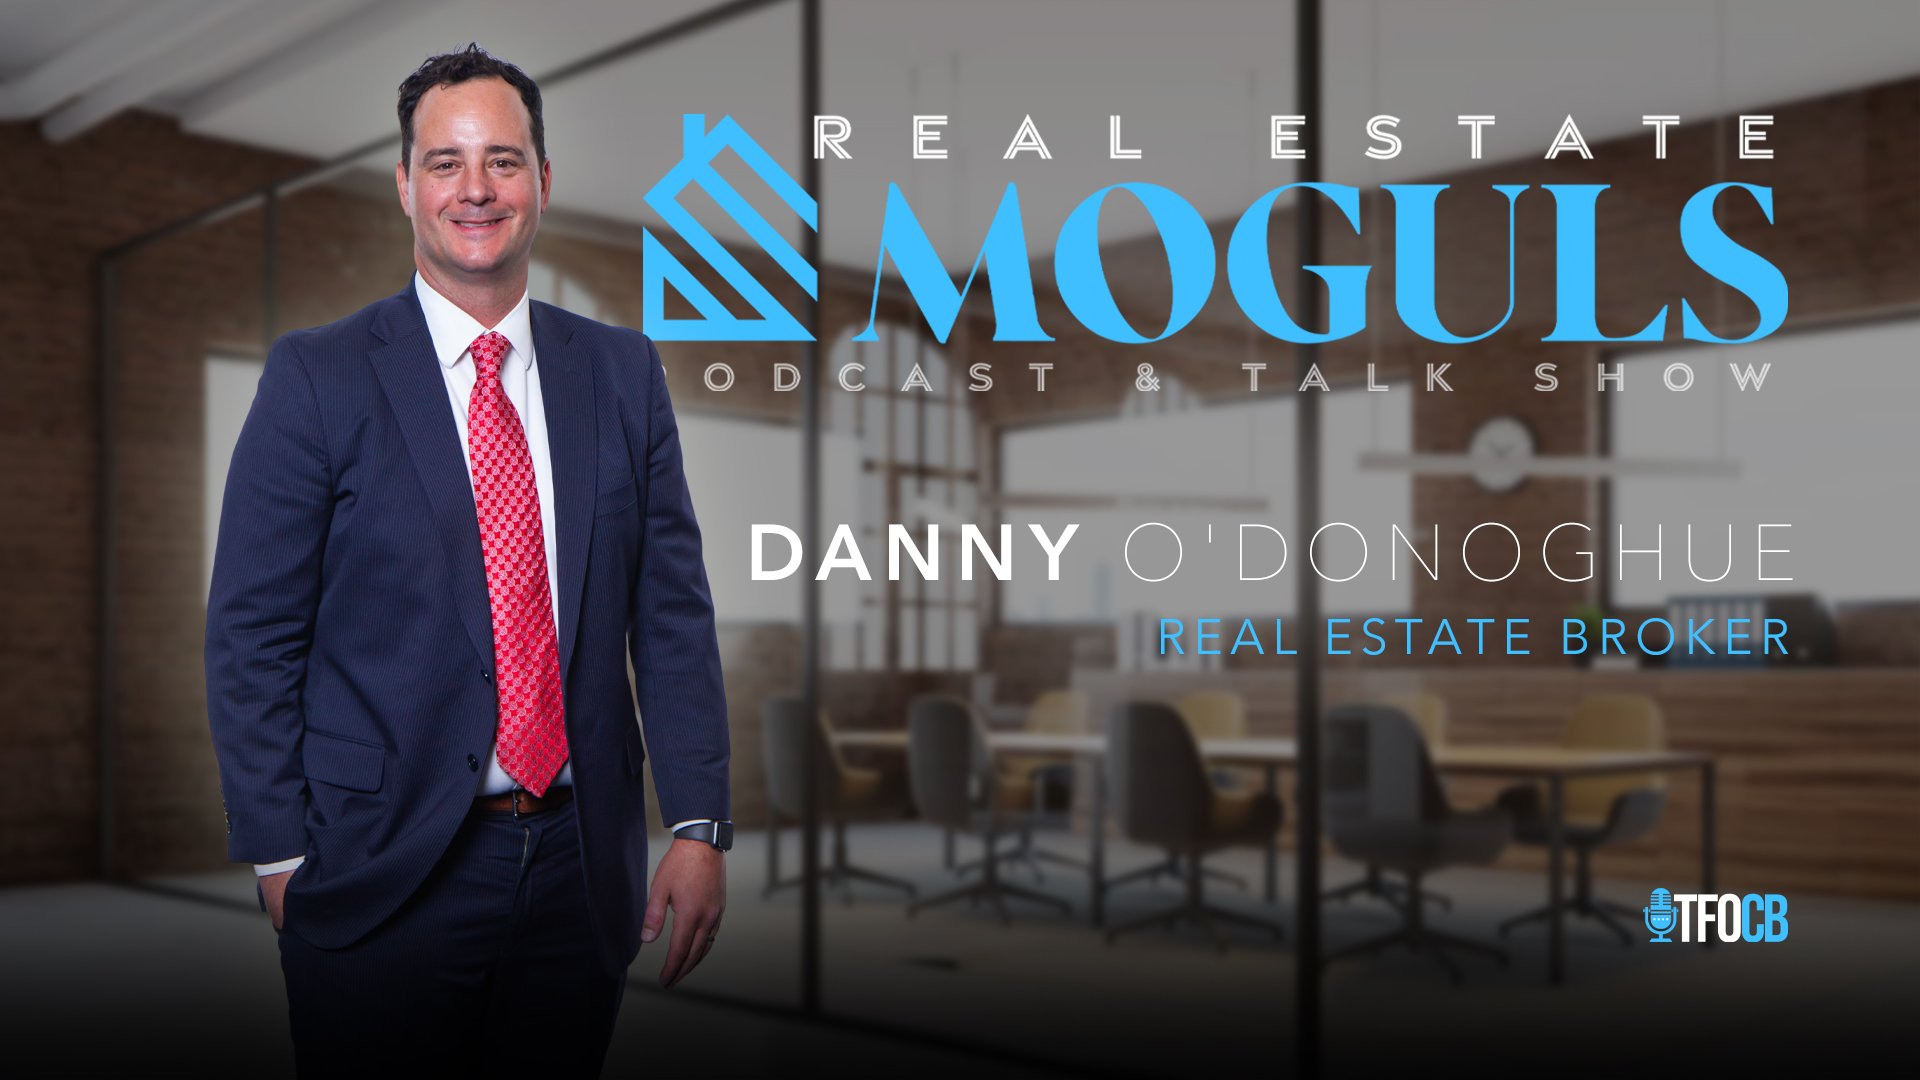 Real Estate Moguls | Danny ODonoghue